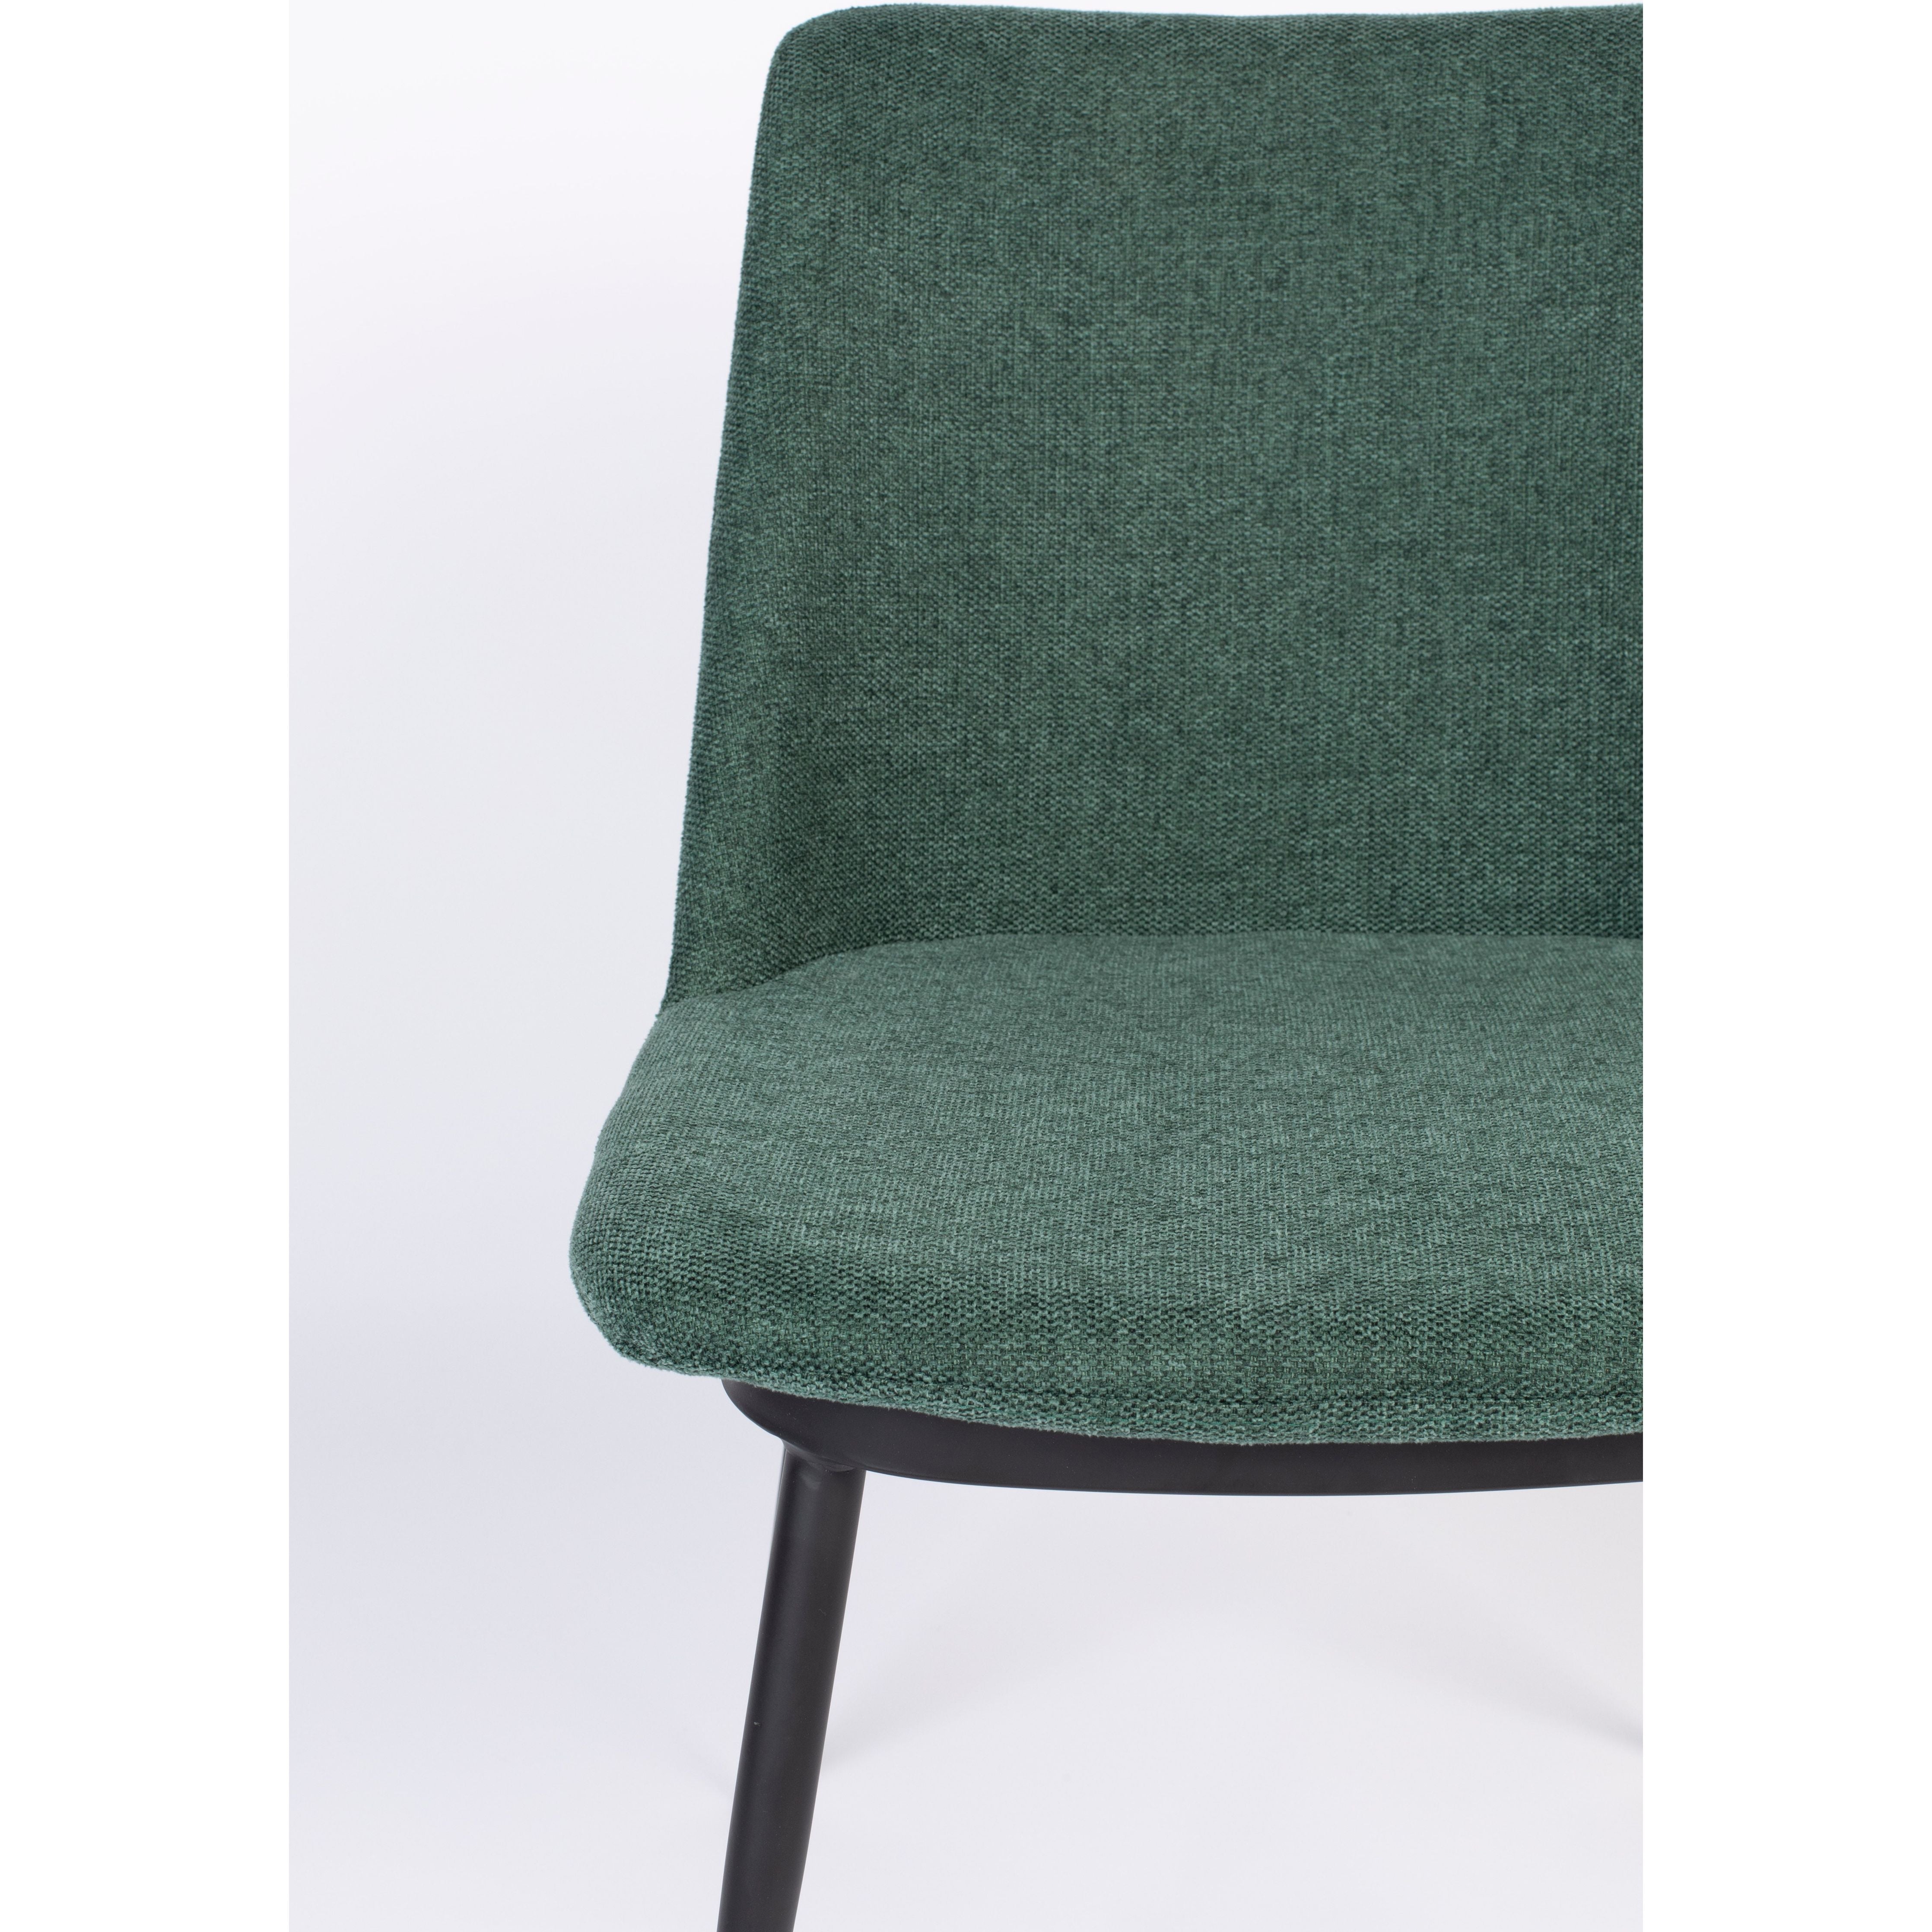 Chair lionel dark green | 2 pieces